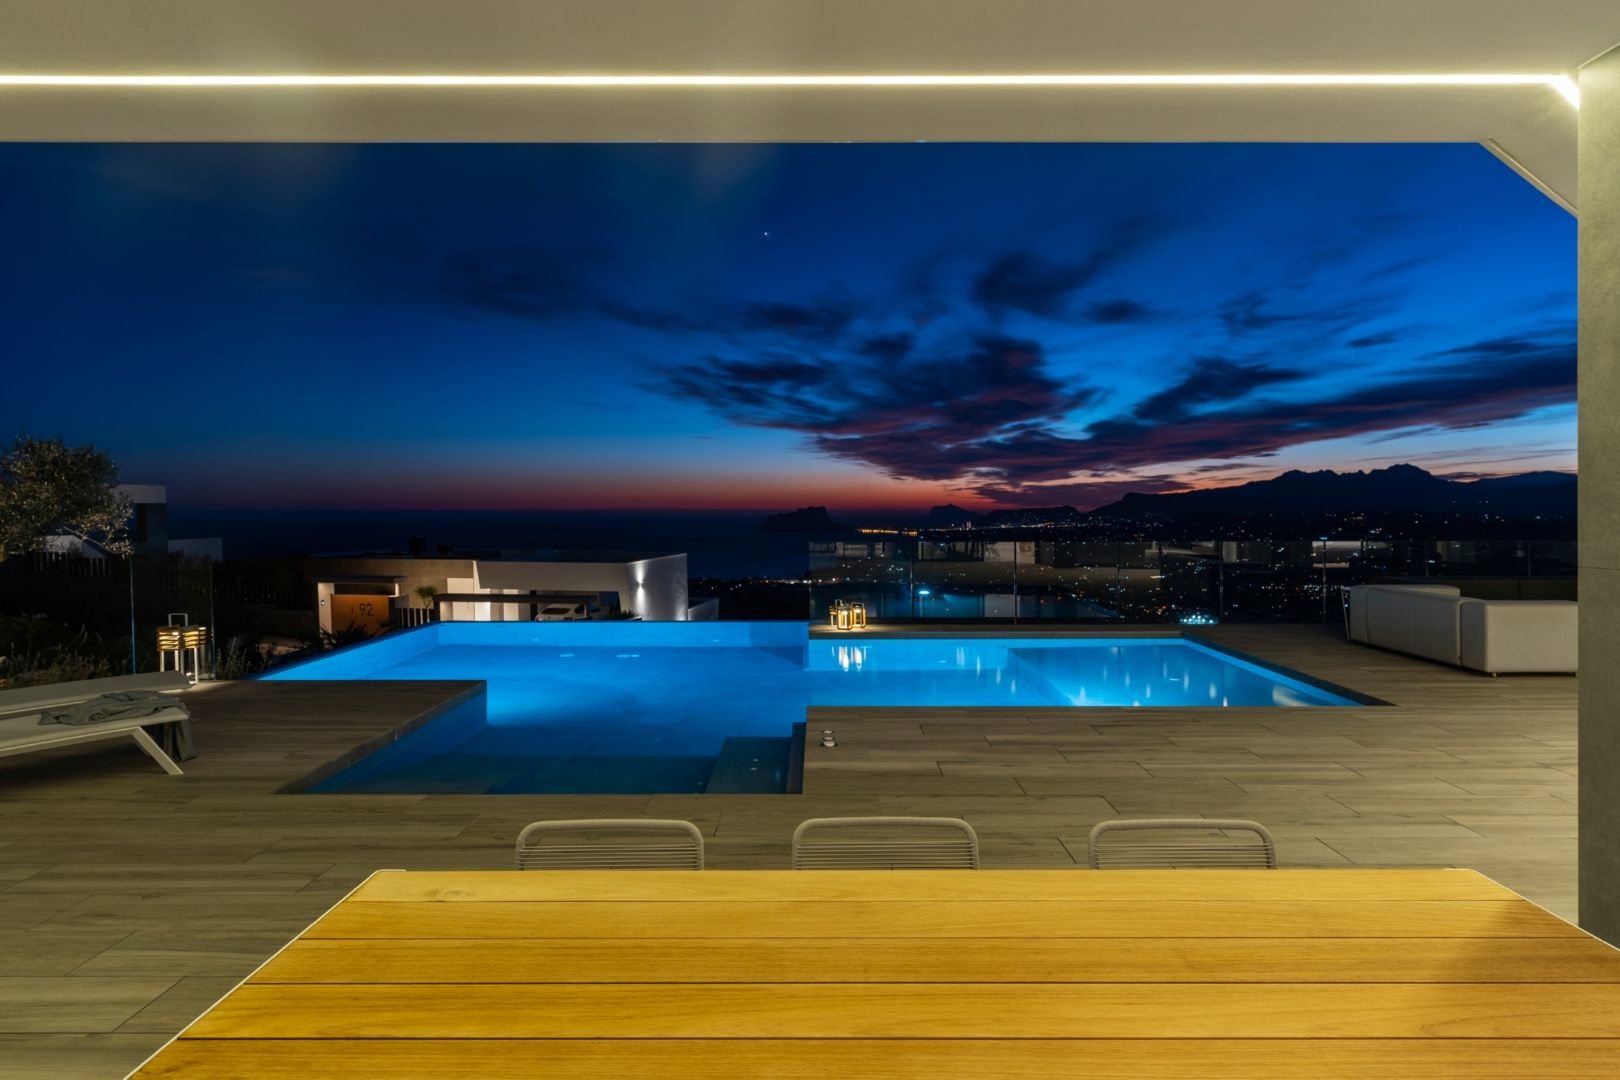 Cumbre del Sol : Luxueuse et moderne villa neuve avec vue imprenable